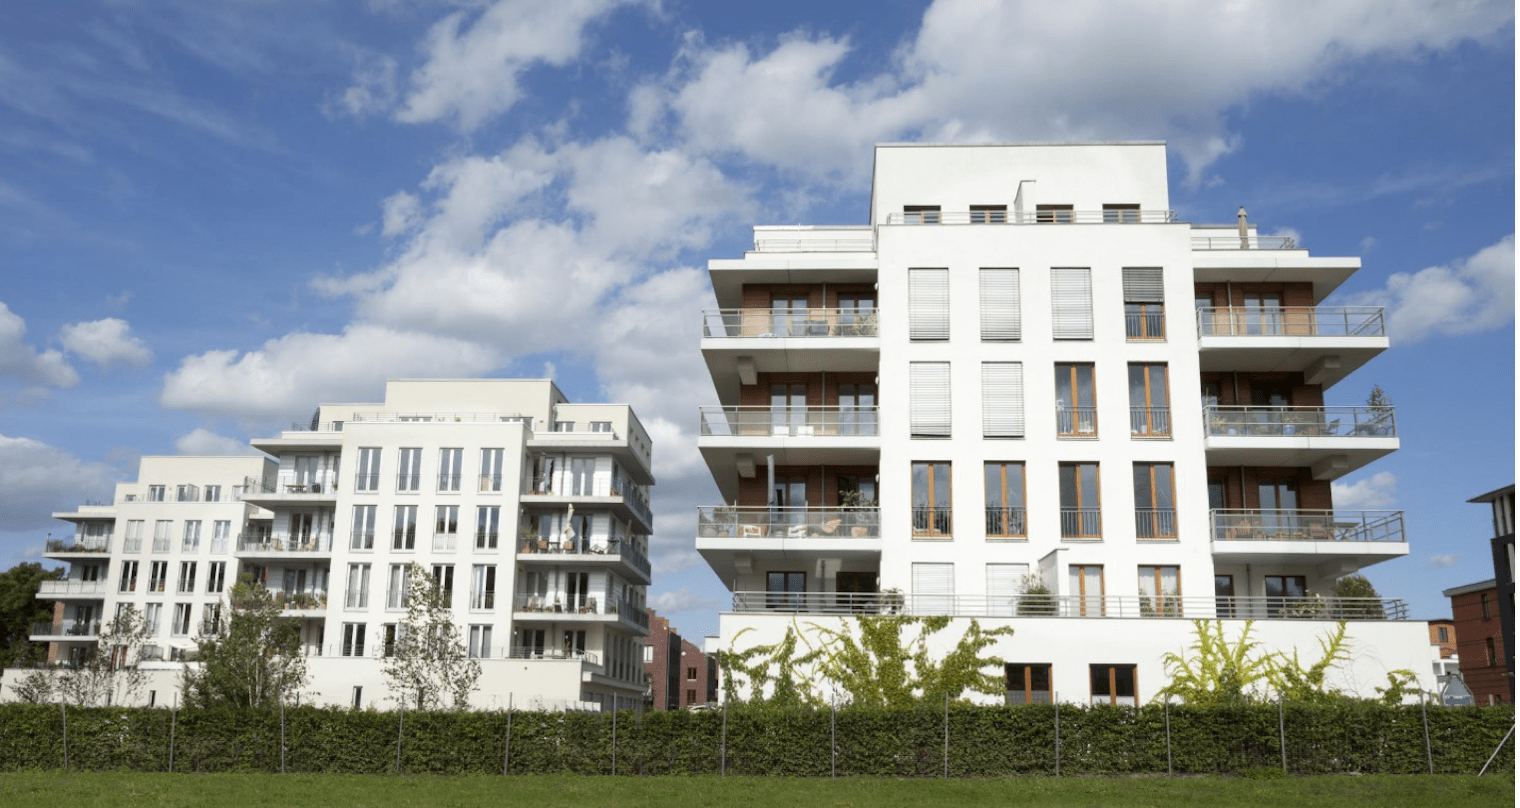 Eine Wohnbausiedlung mit Mehrfamilienhäusern in der Schweiz 